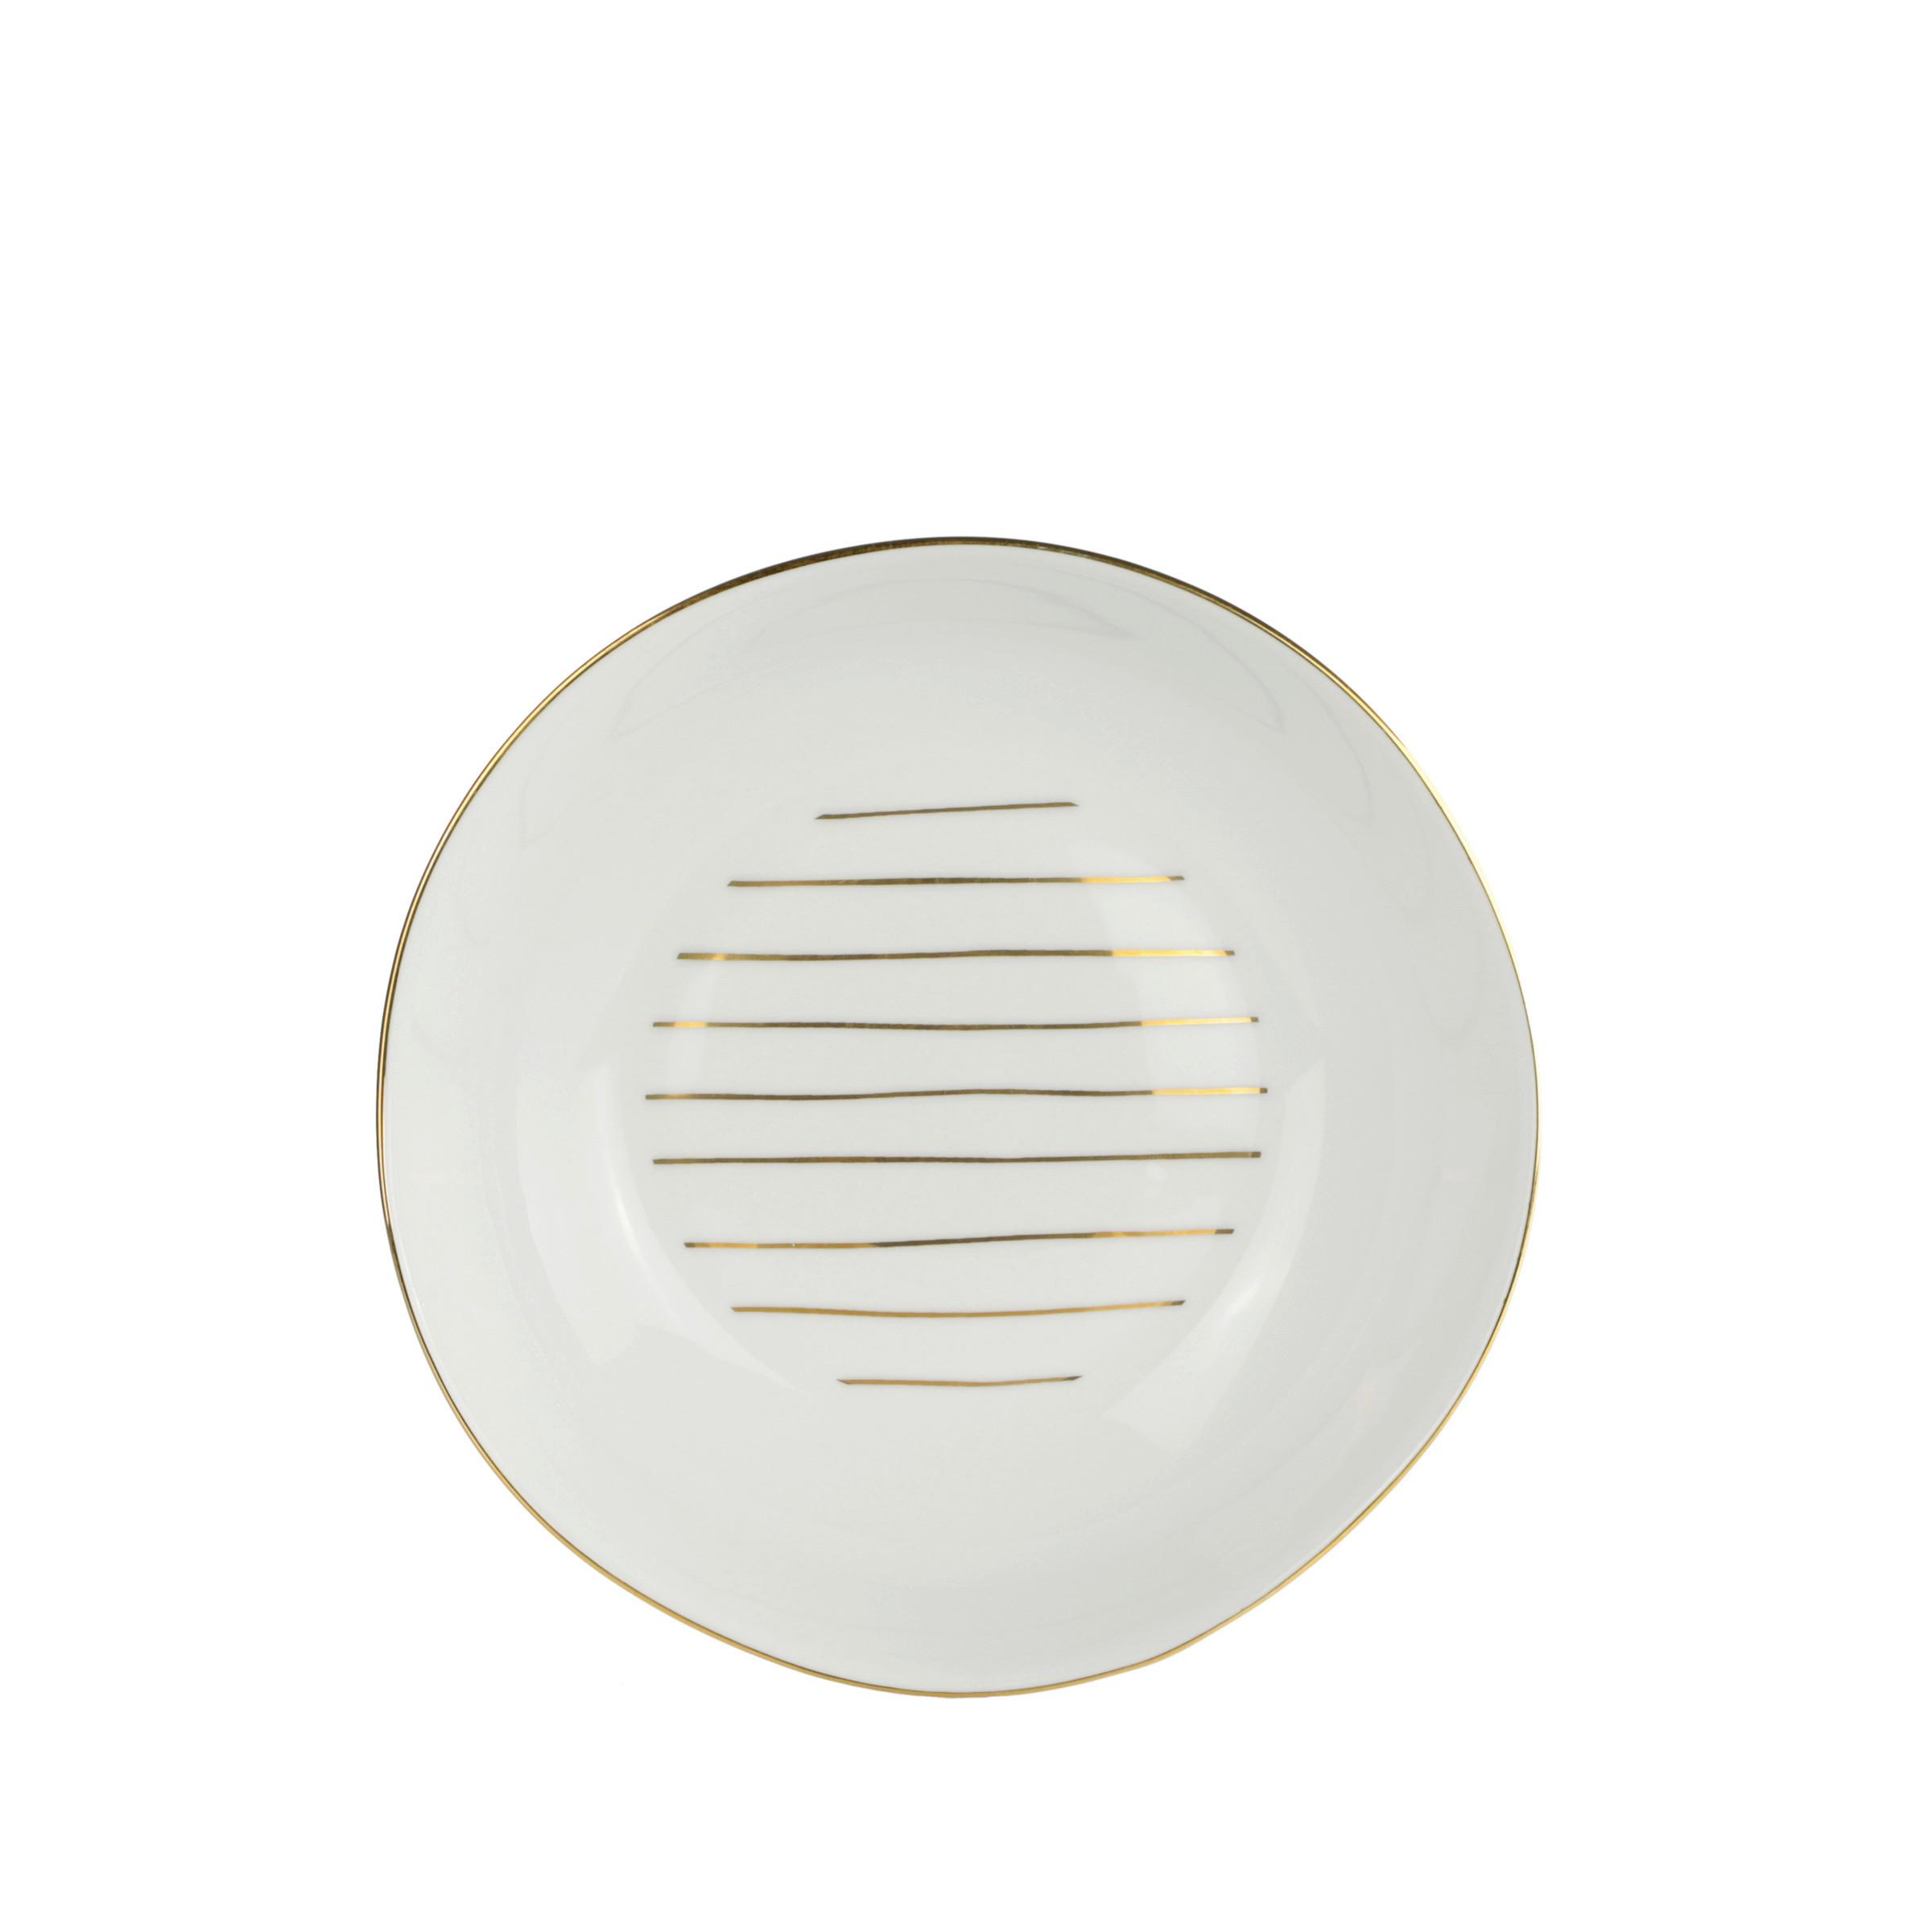 Globoki Krožnik Onix - zlate barve/bela, Moderno, keramika (20,5cm) - Premium Living